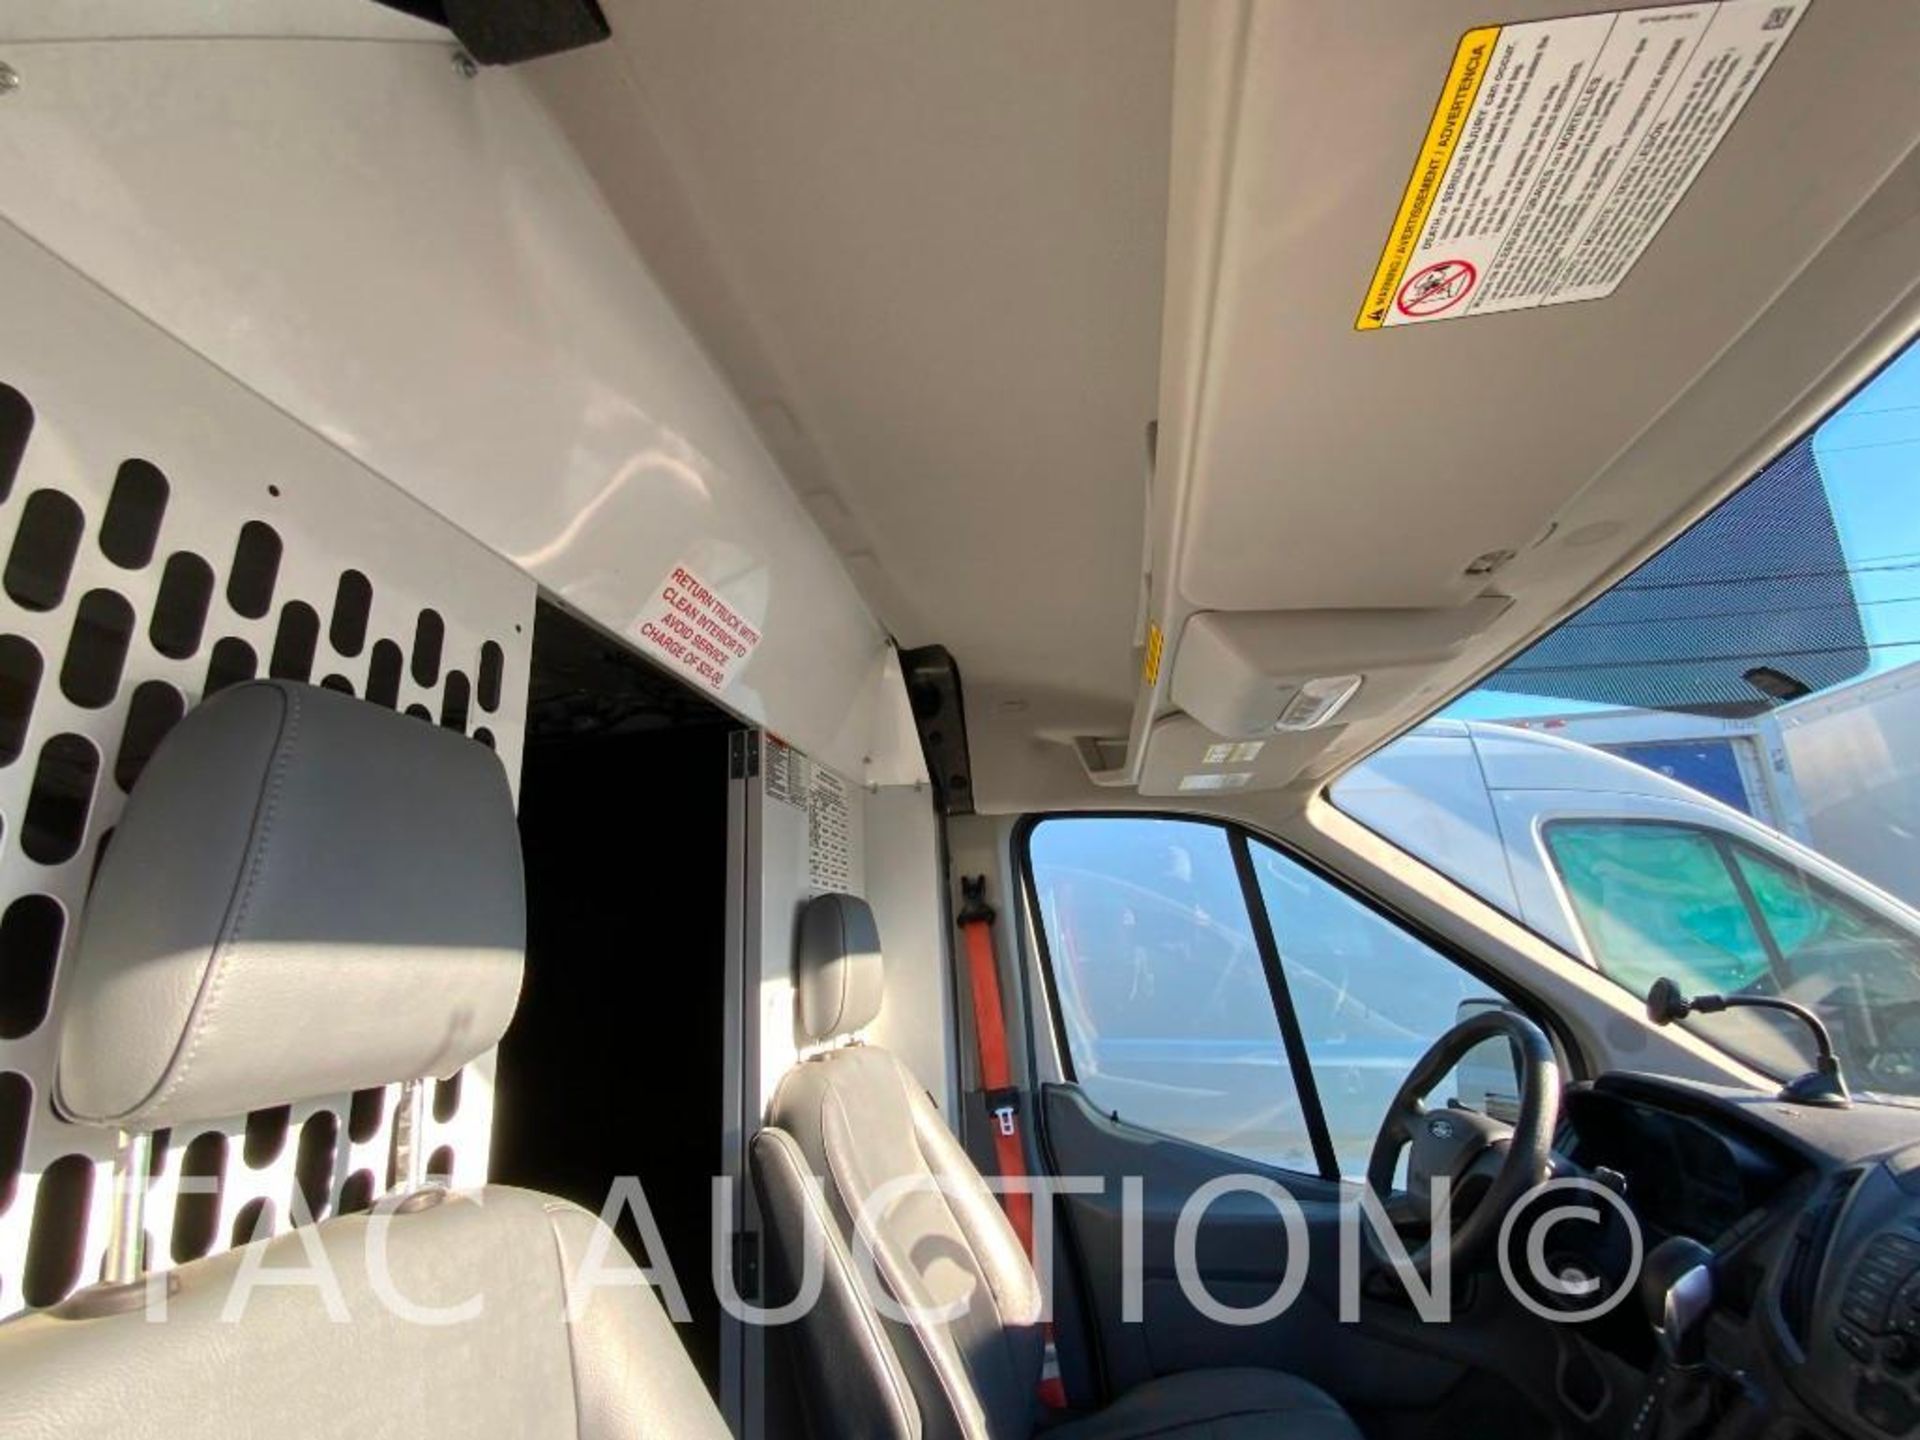 2019 Ford Transit 150 Cargo Van - Image 22 of 52